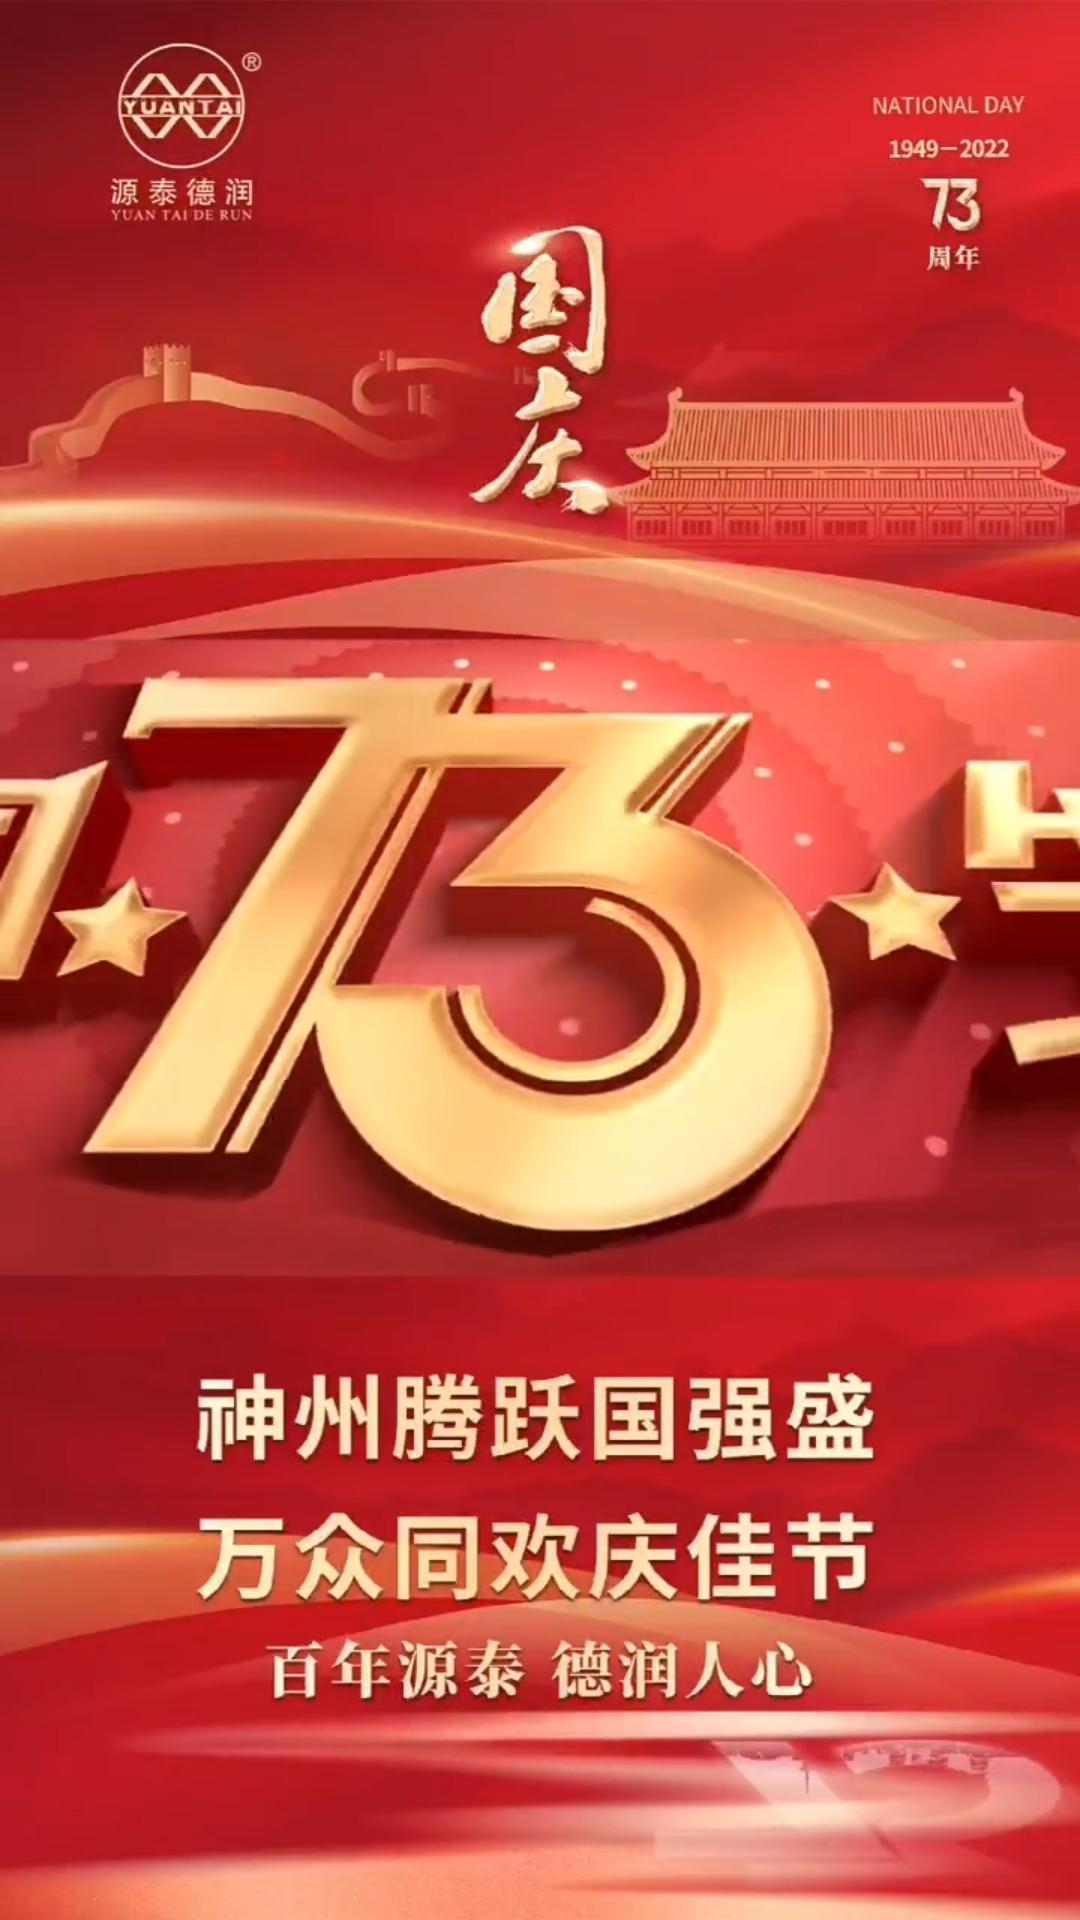 Wünschen Sie dem großen Mutterland mehr Wohlstand und Wohlstand – wir feiern den chinesischen Nationalfeiertag